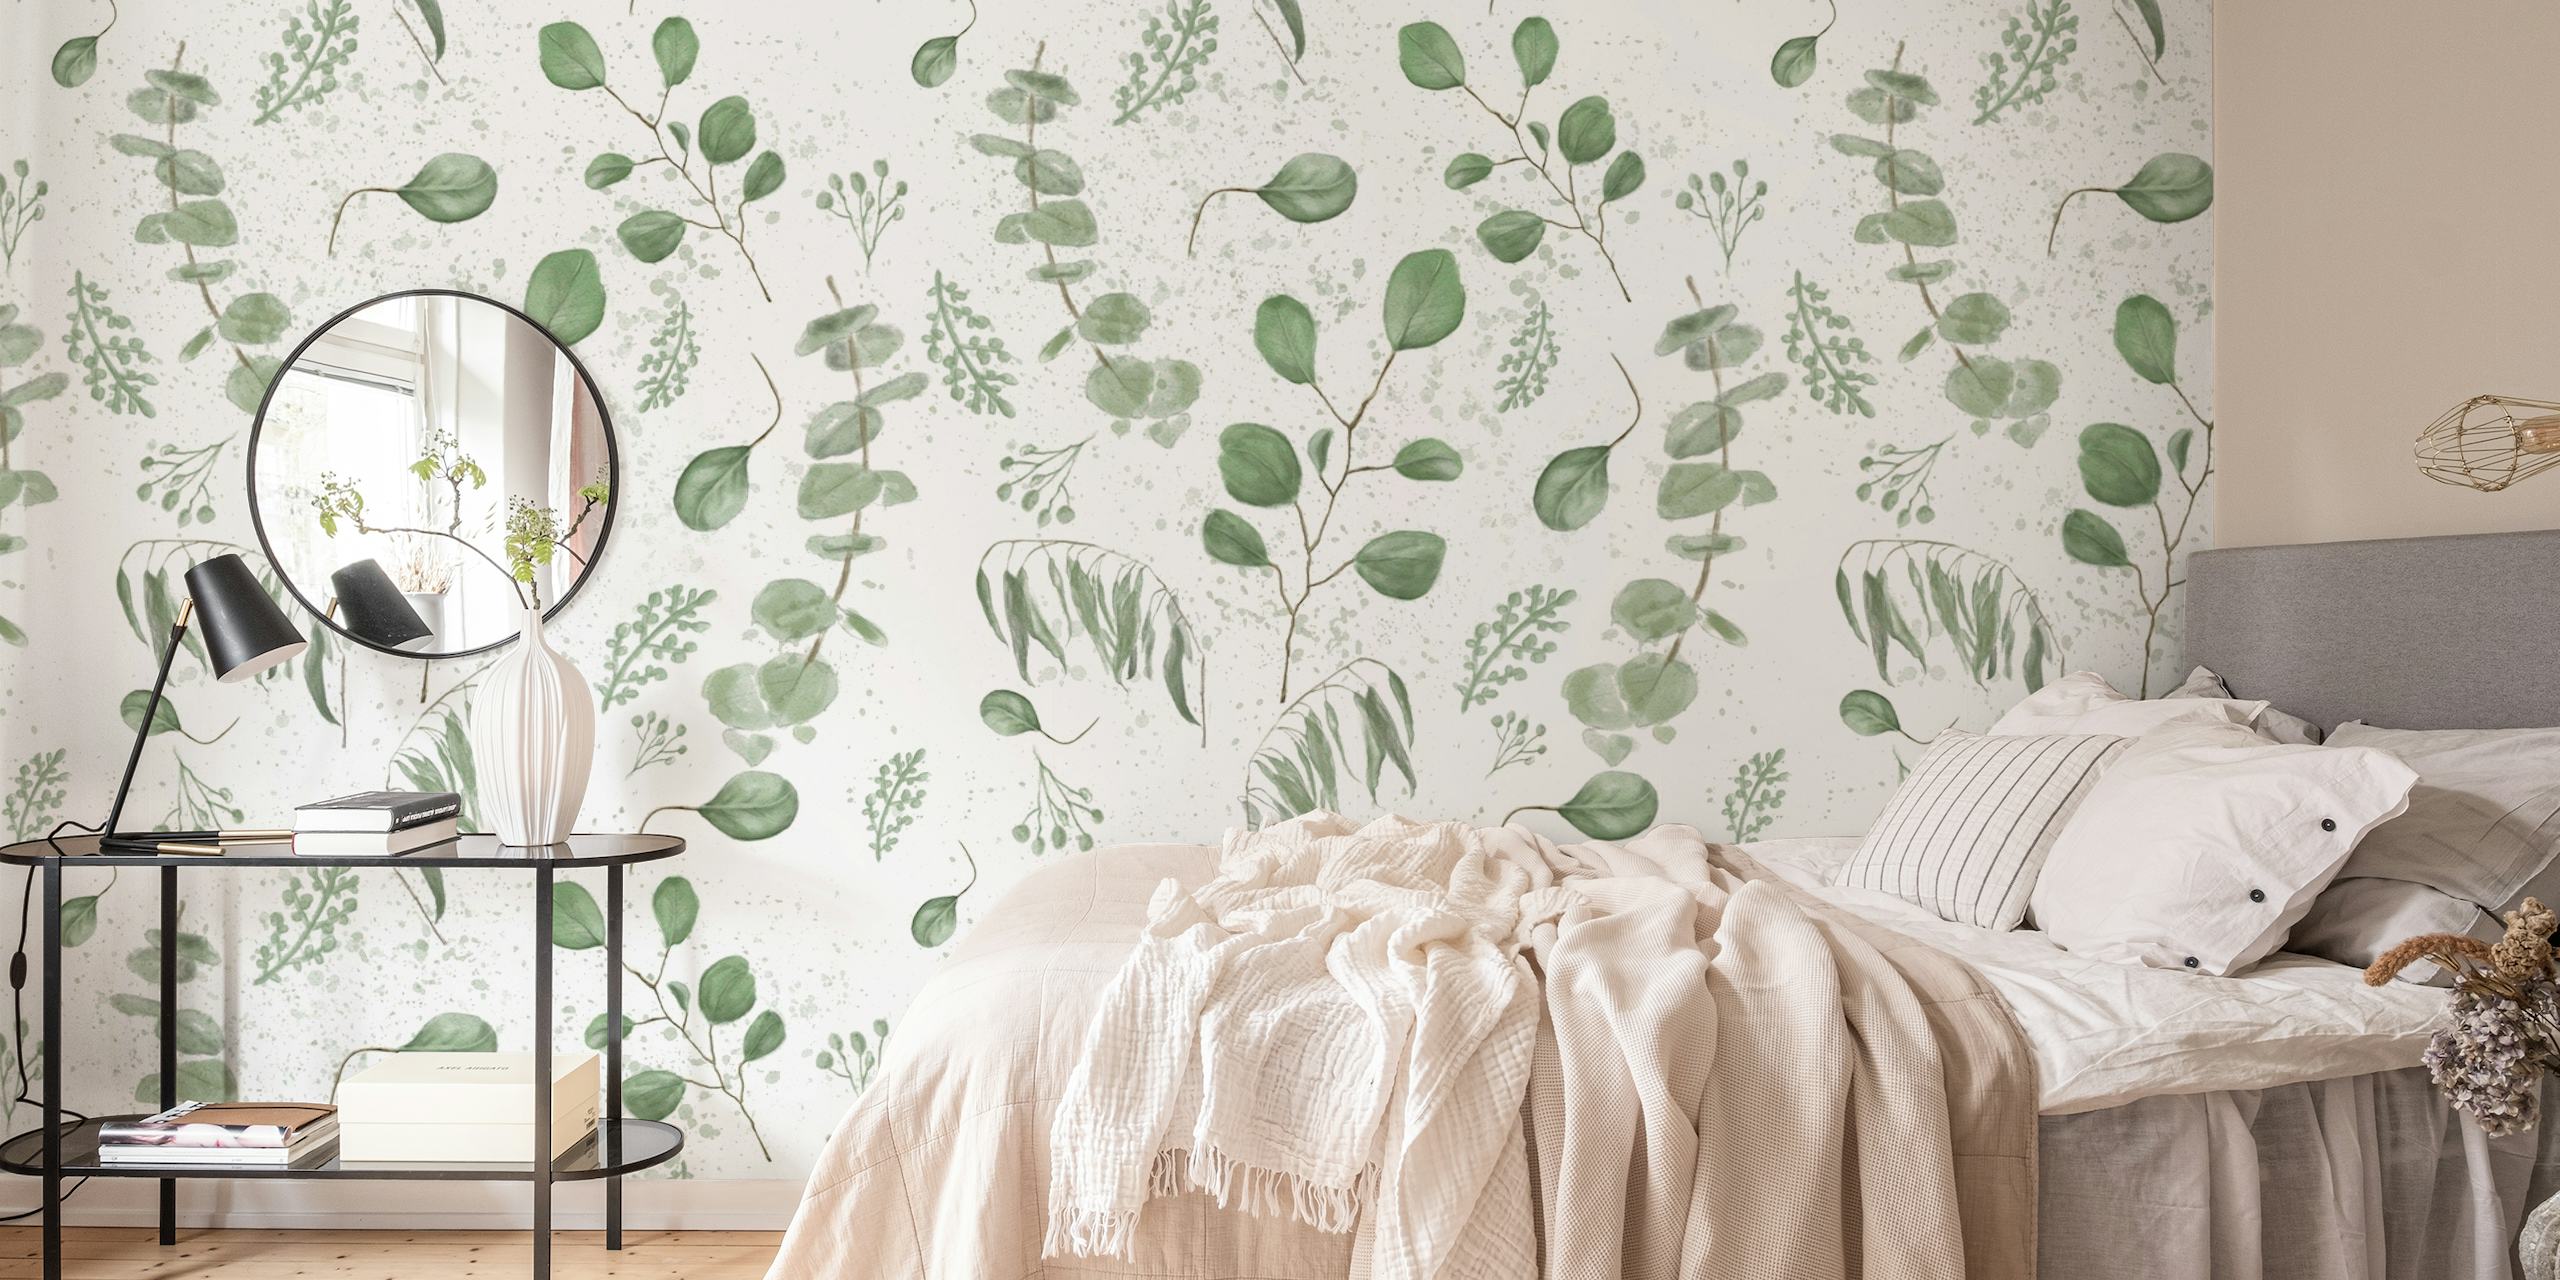 Fotomural vinílico de parede padrão aquarela de eucalipto em tons de verde claro